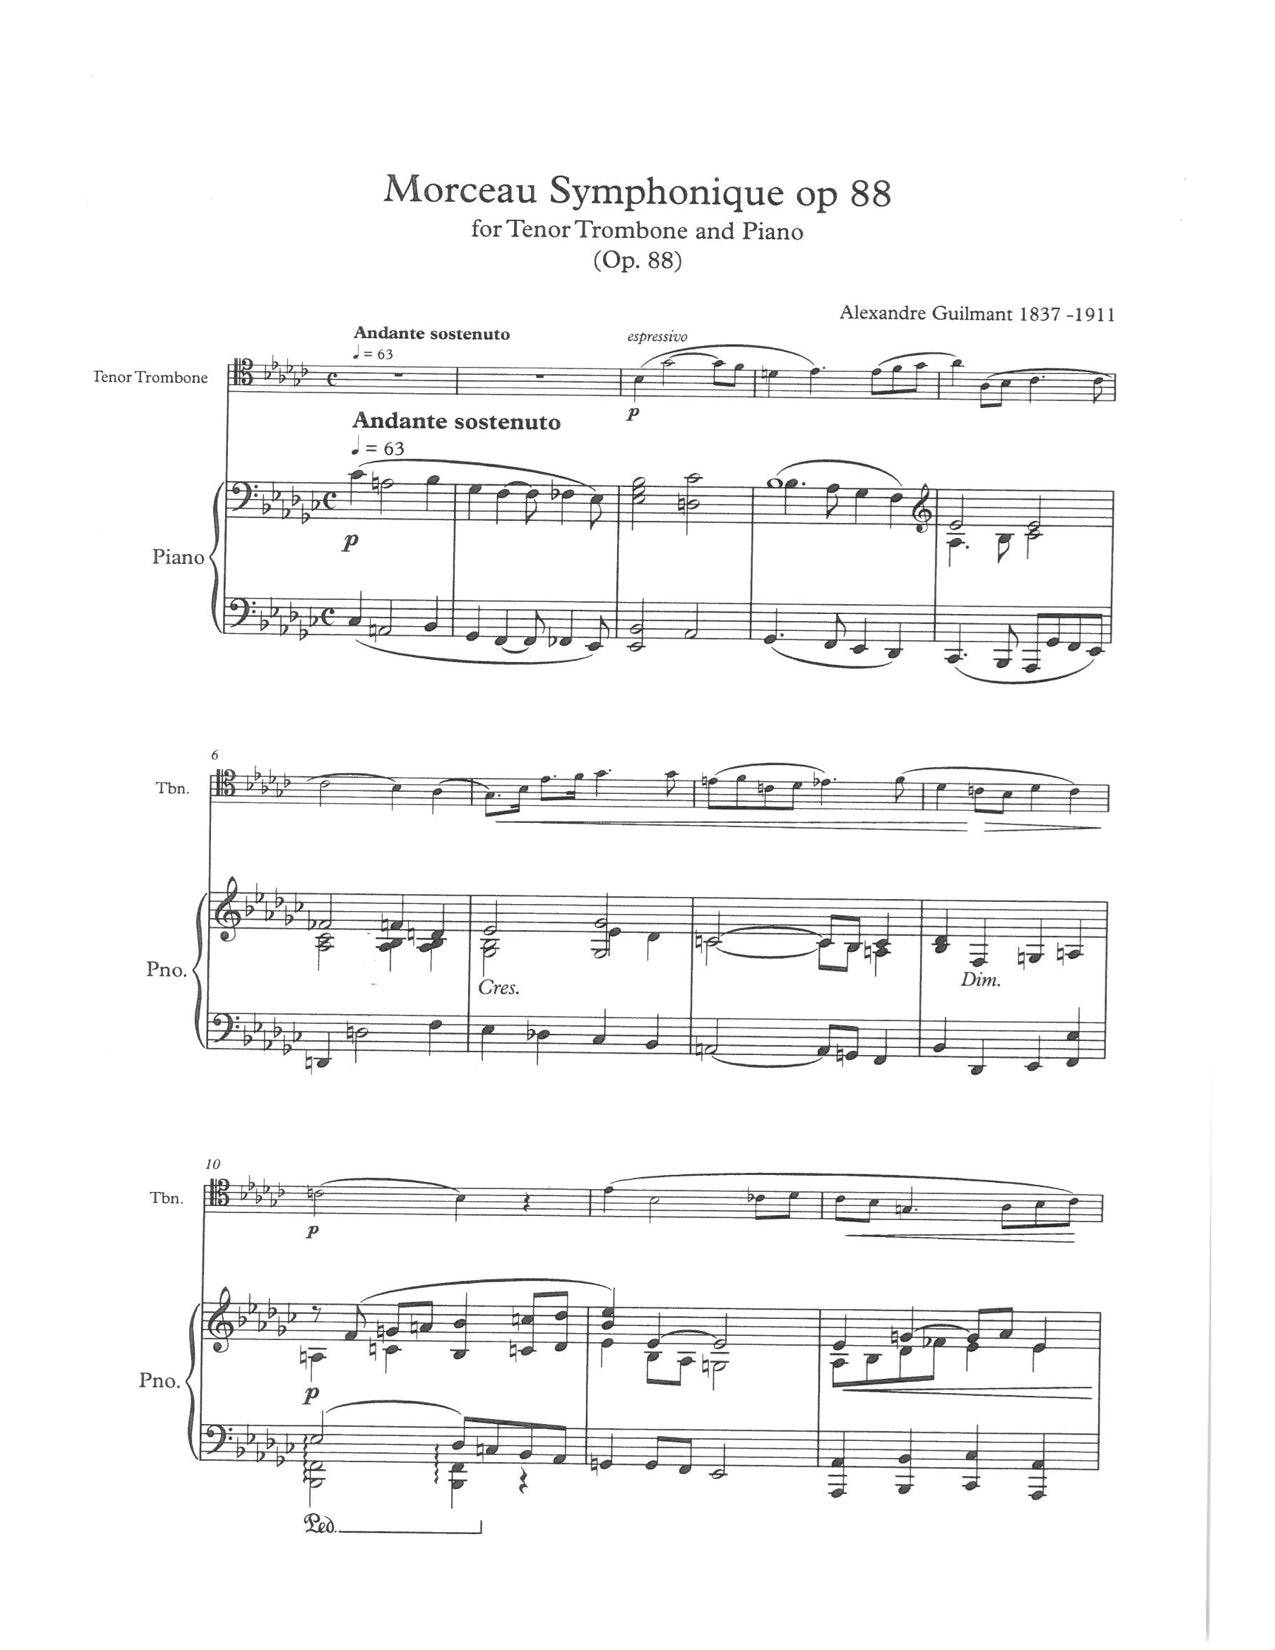 A Guilmant - Morceau Symphonique op 88